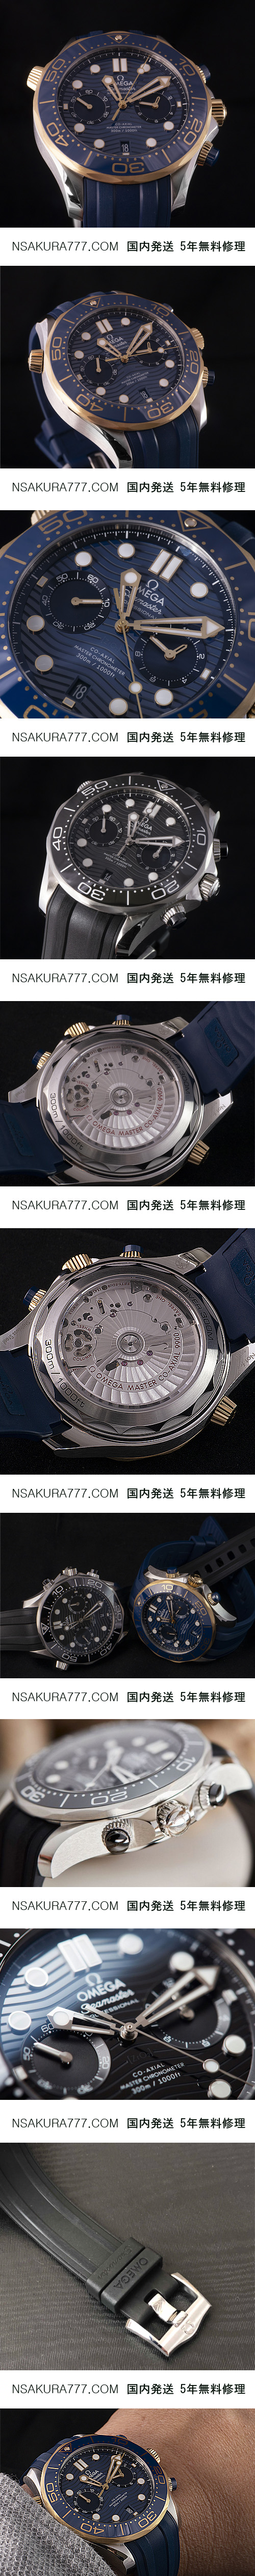 オメガ Seamaster Diver 300m Master Chronometer Chronograph 44mm Ref：210.22.44.51.01.001(Noob工場製品) - ウインドウを閉じる